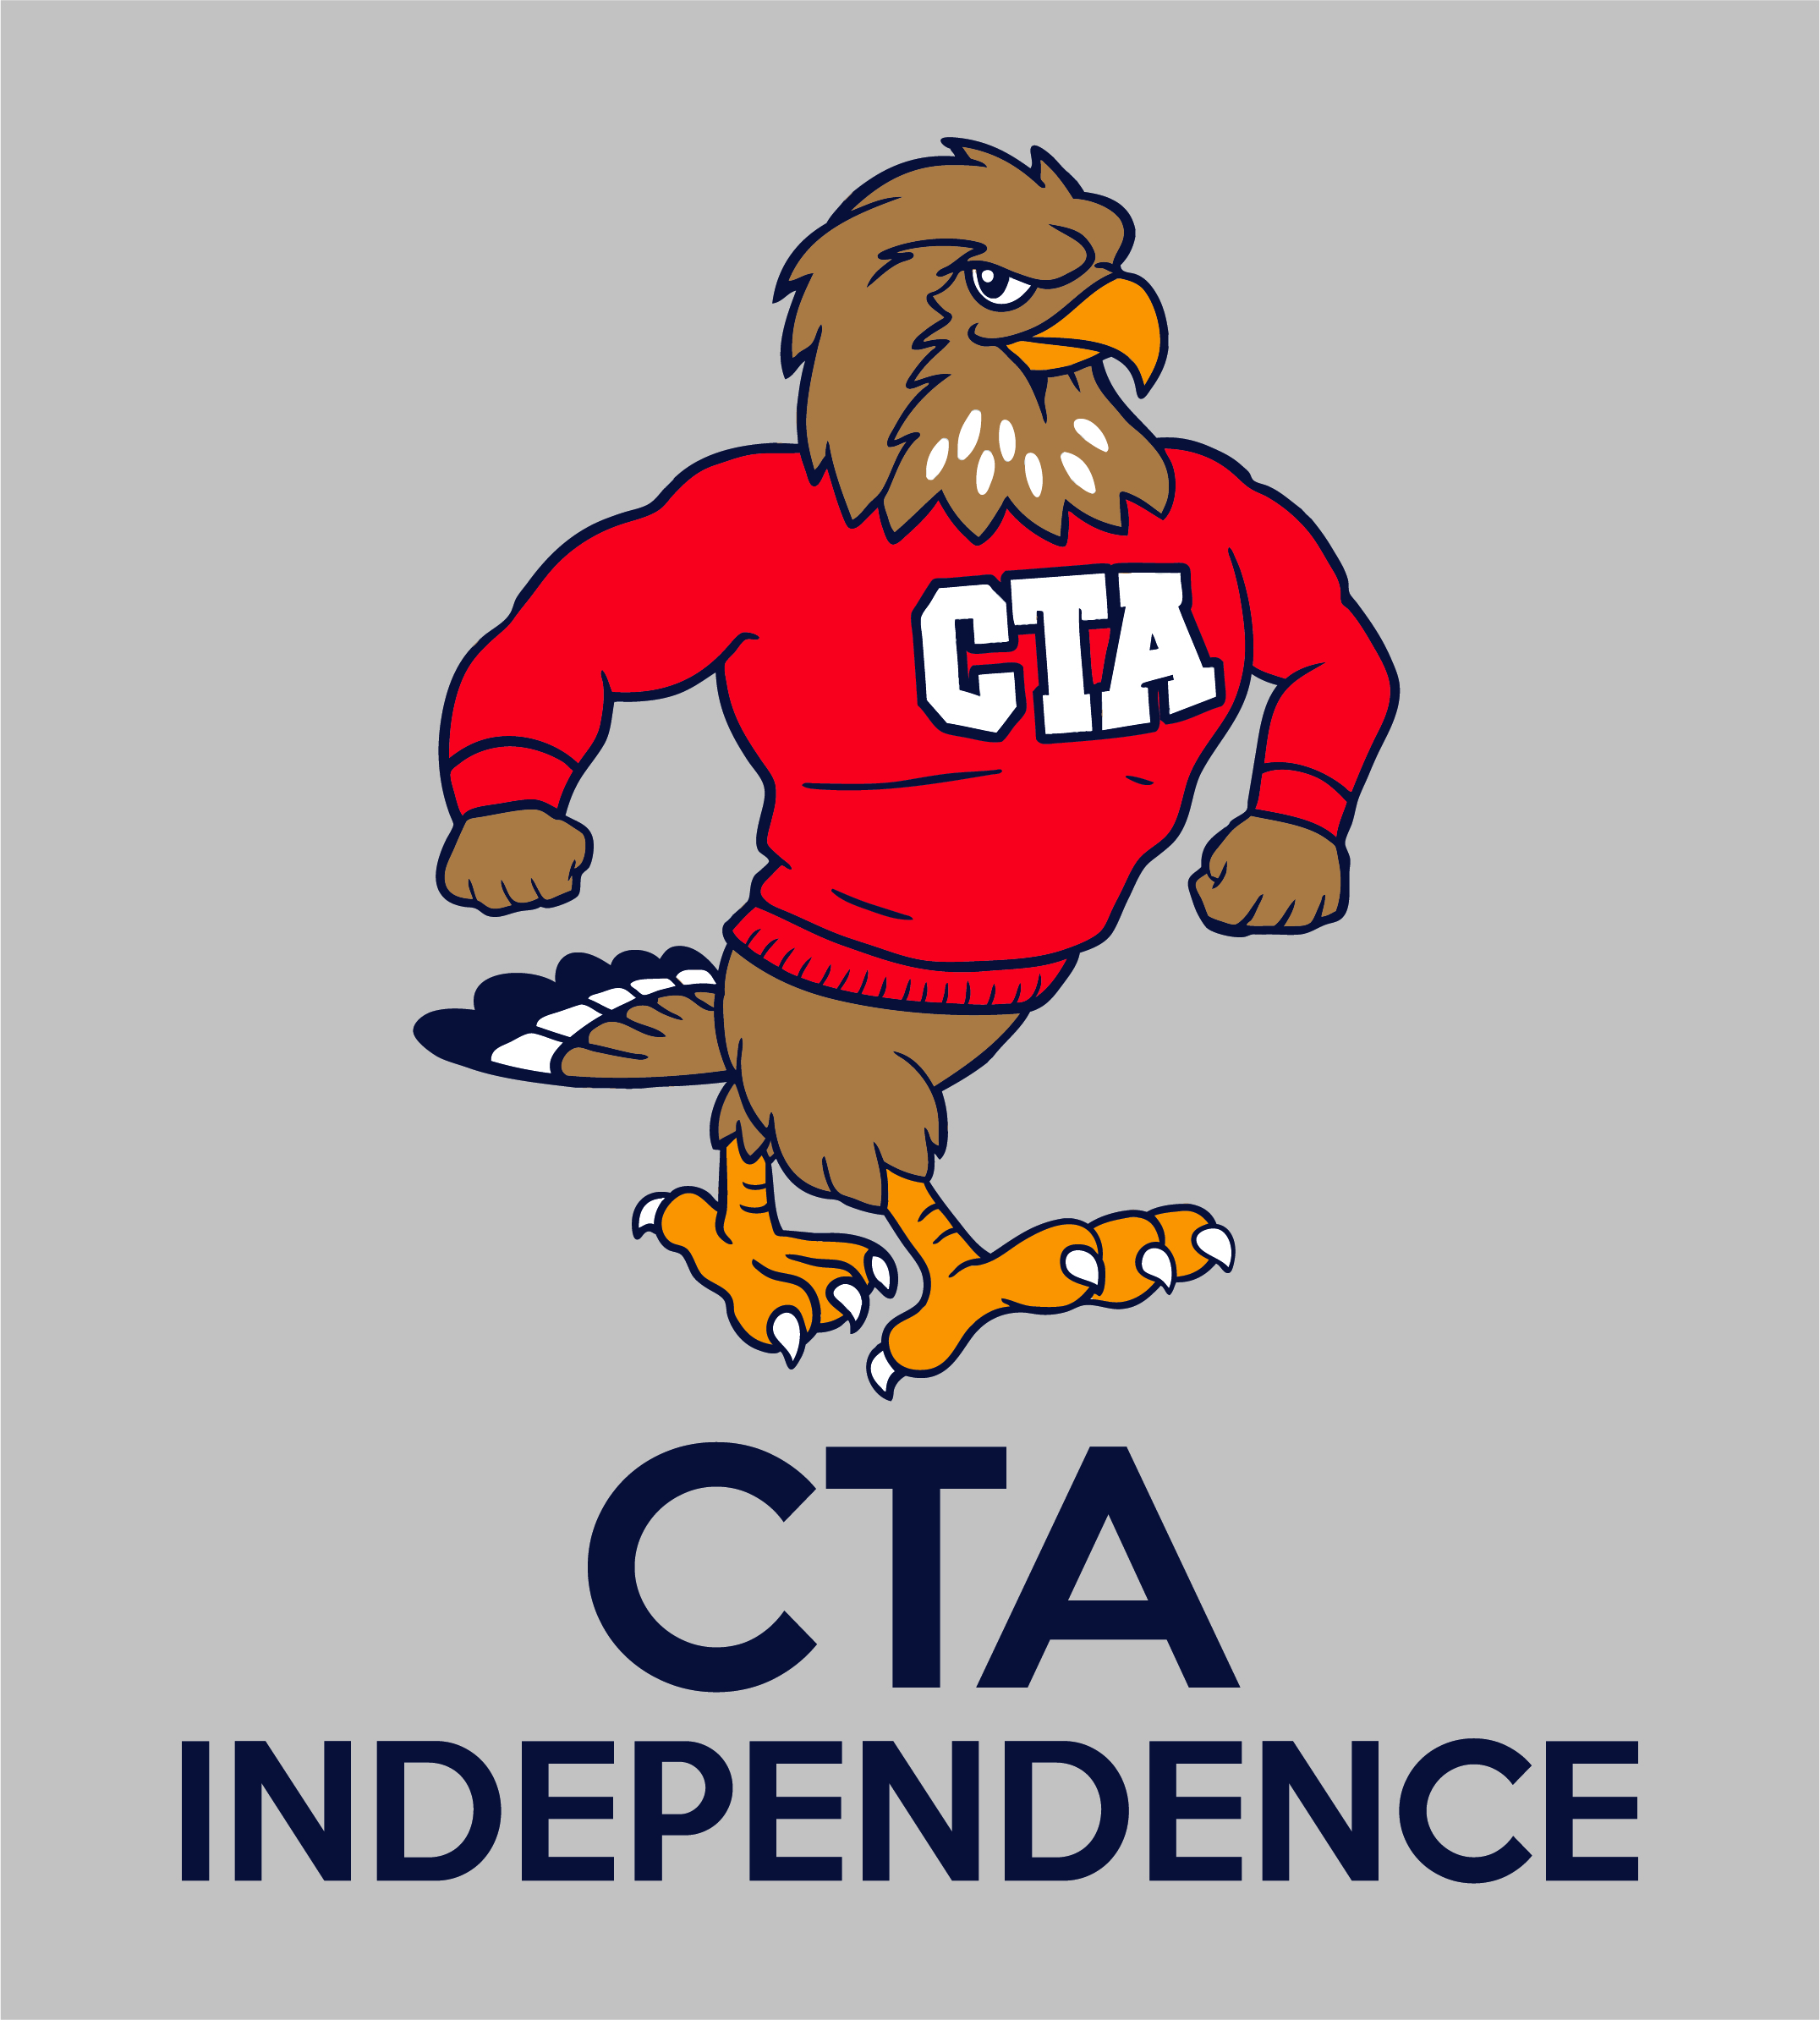 CTA Independence